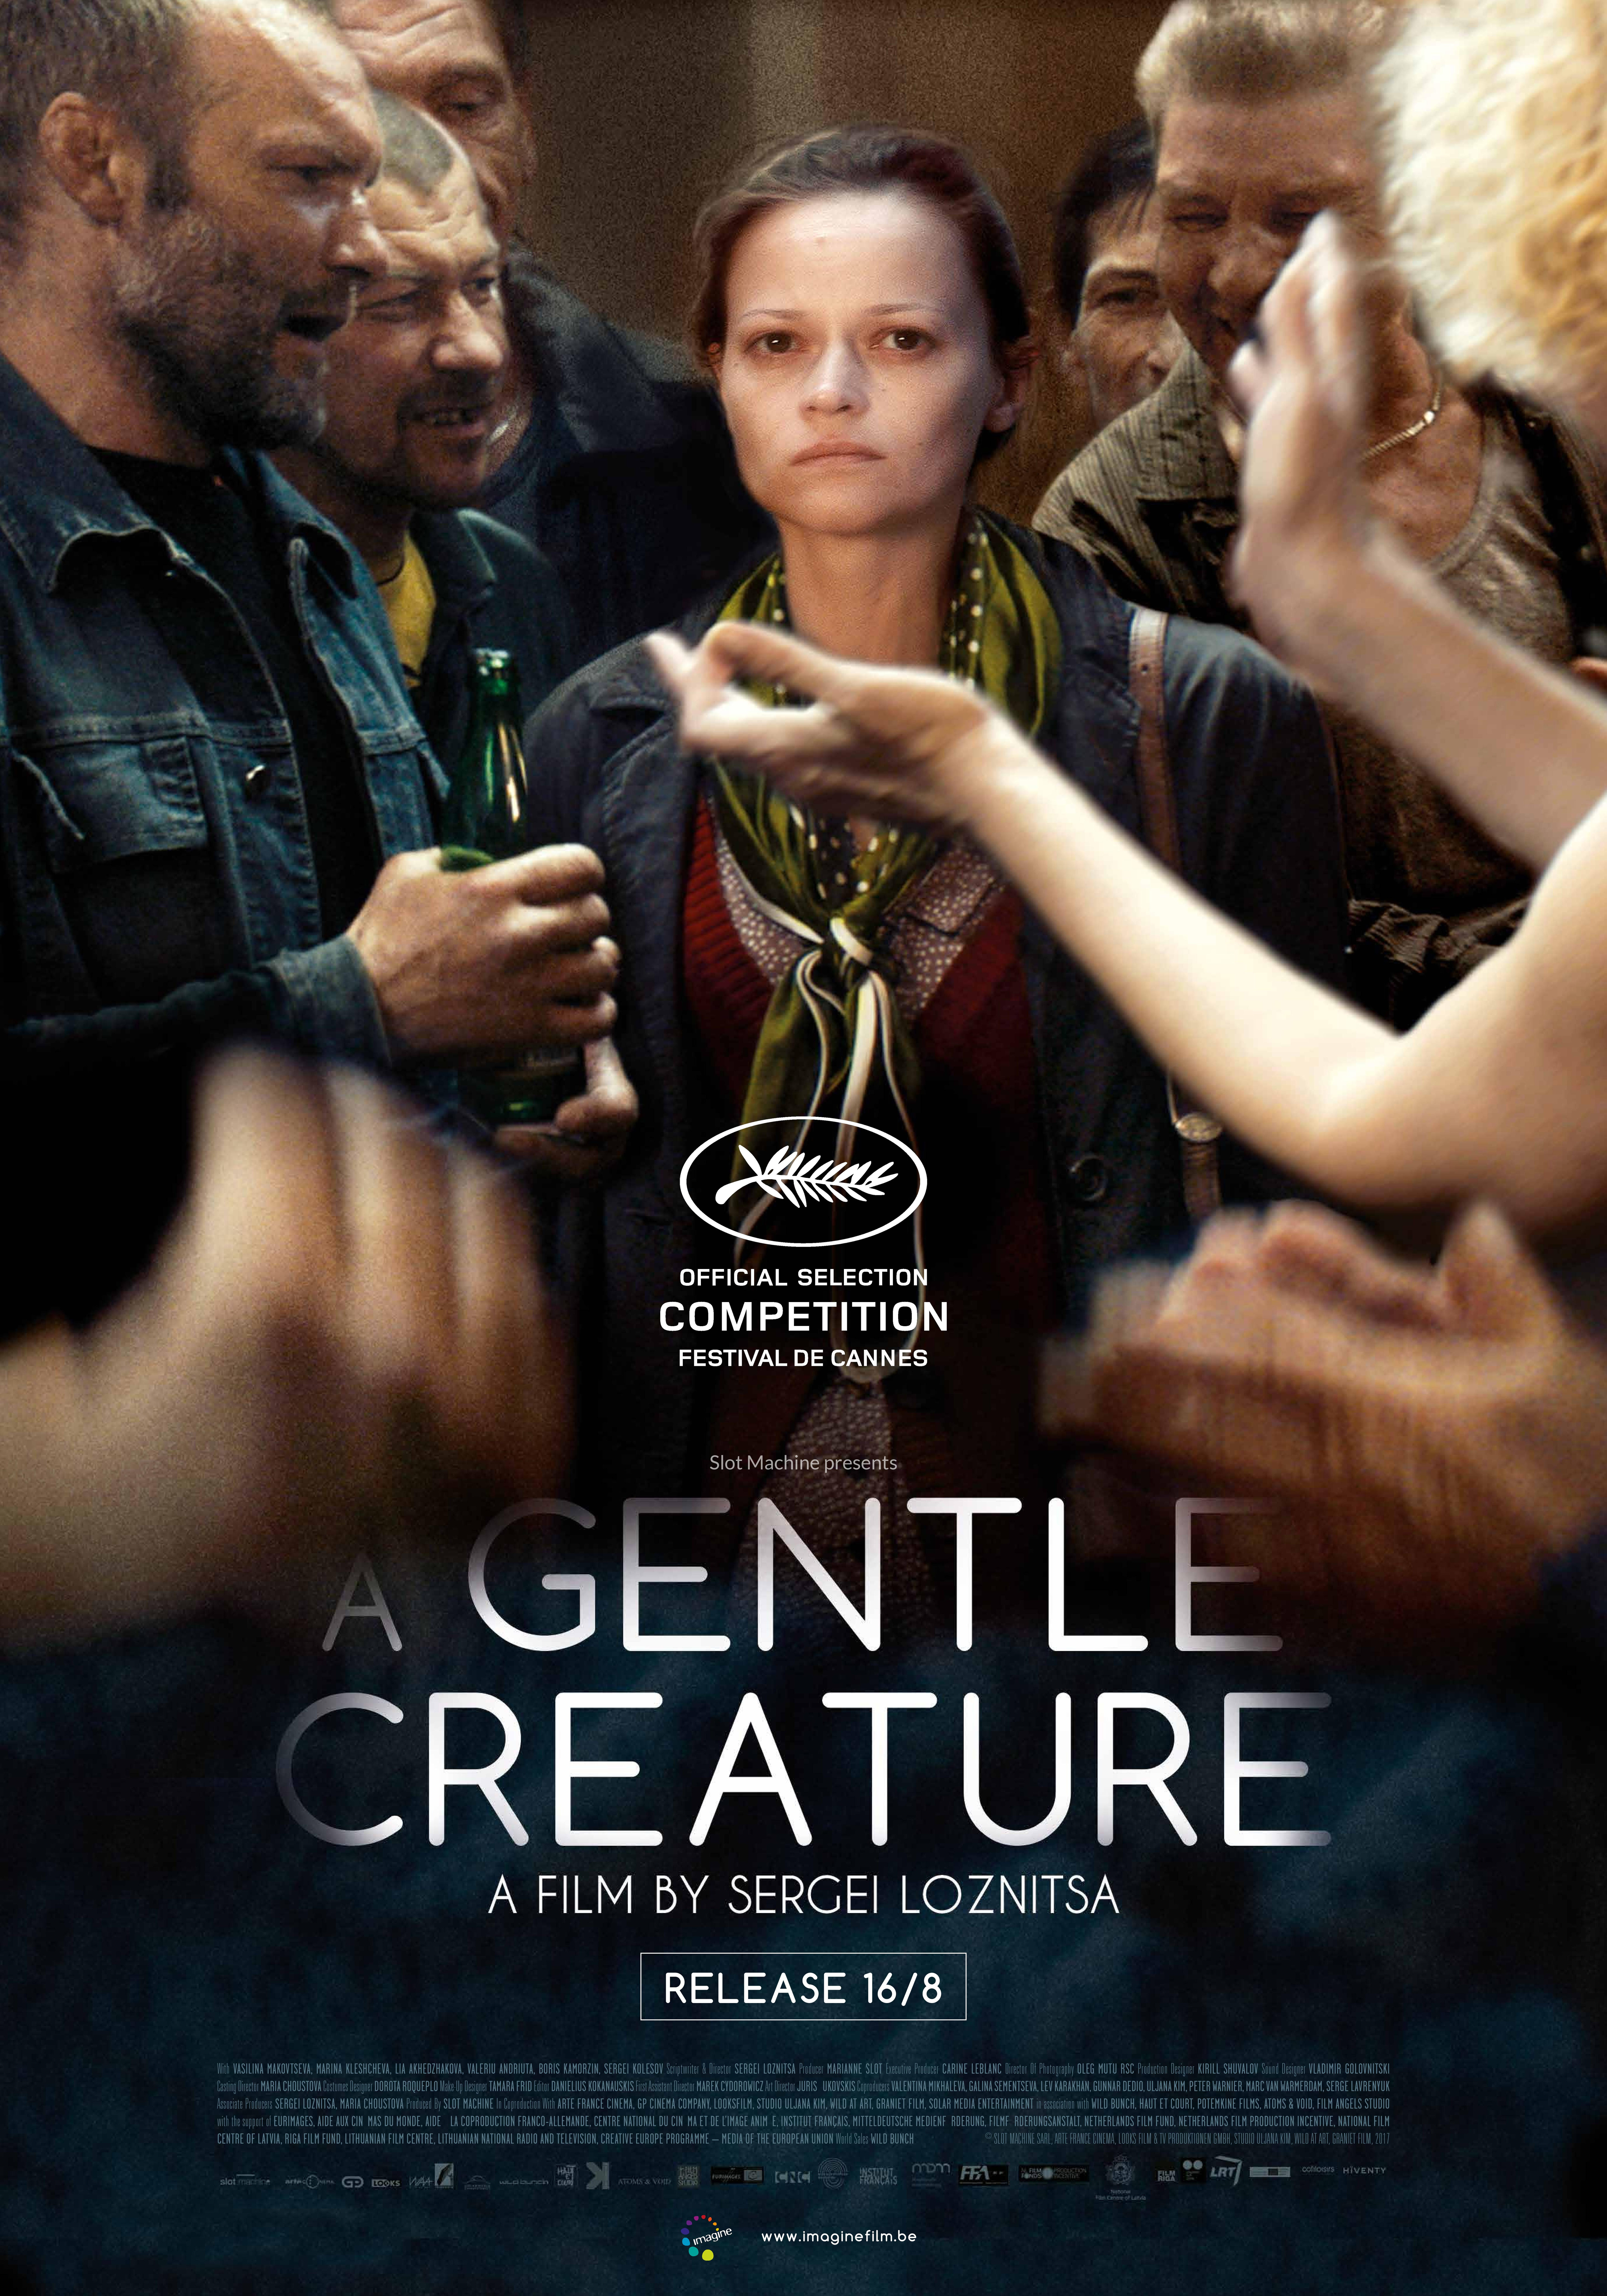 Nonton film A Gentle Creature layarkaca21 indoxx1 ganool online streaming terbaru